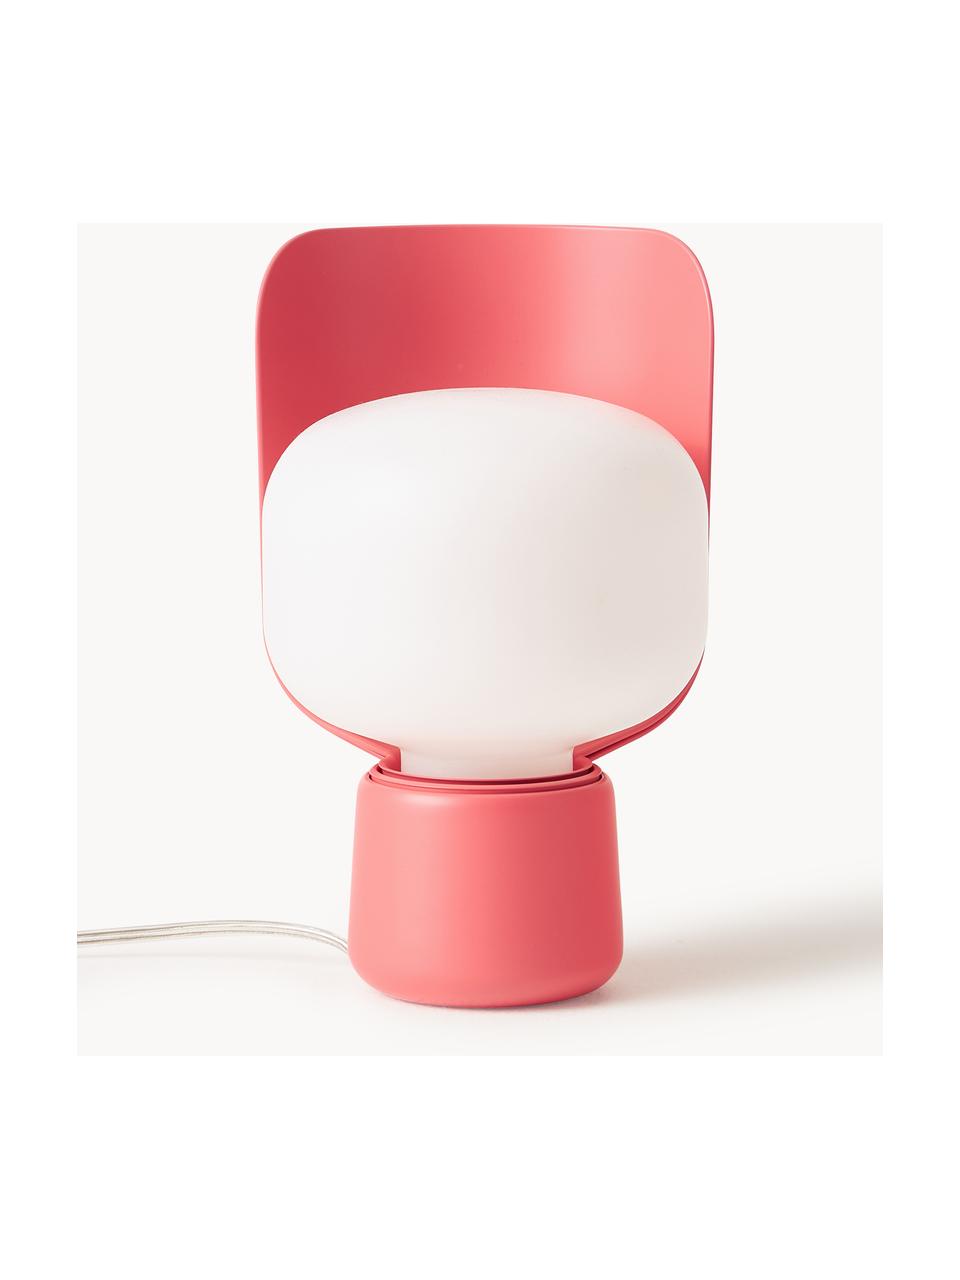 Petite lampe à poser artisanale Blom, Blanc, rouge corail, Ø 15 x haut. 24 cm